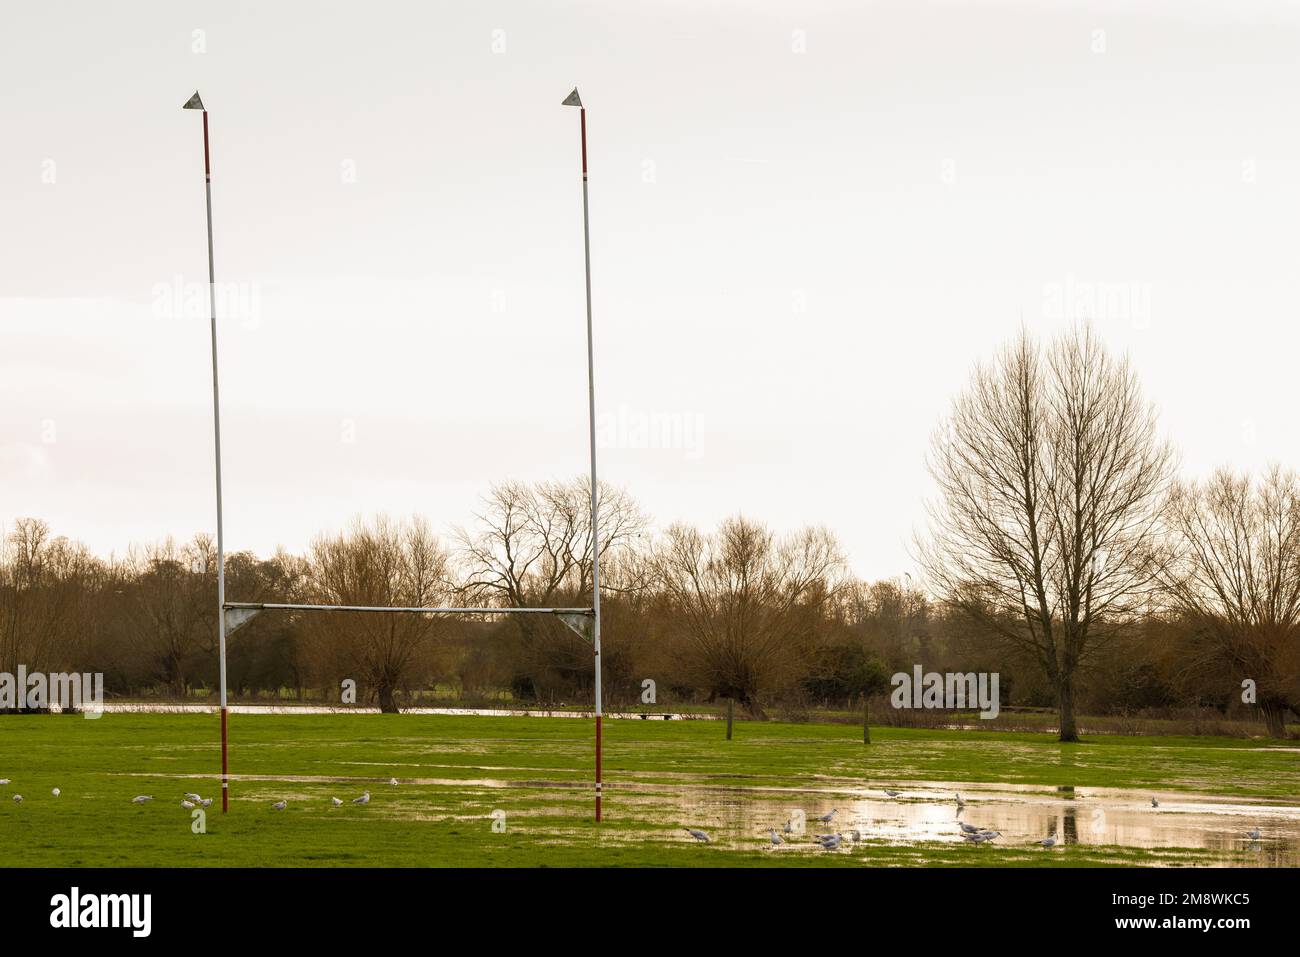 Terrain de sport inondé après une forte pluie, le champ est rempli d'eau Banque D'Images